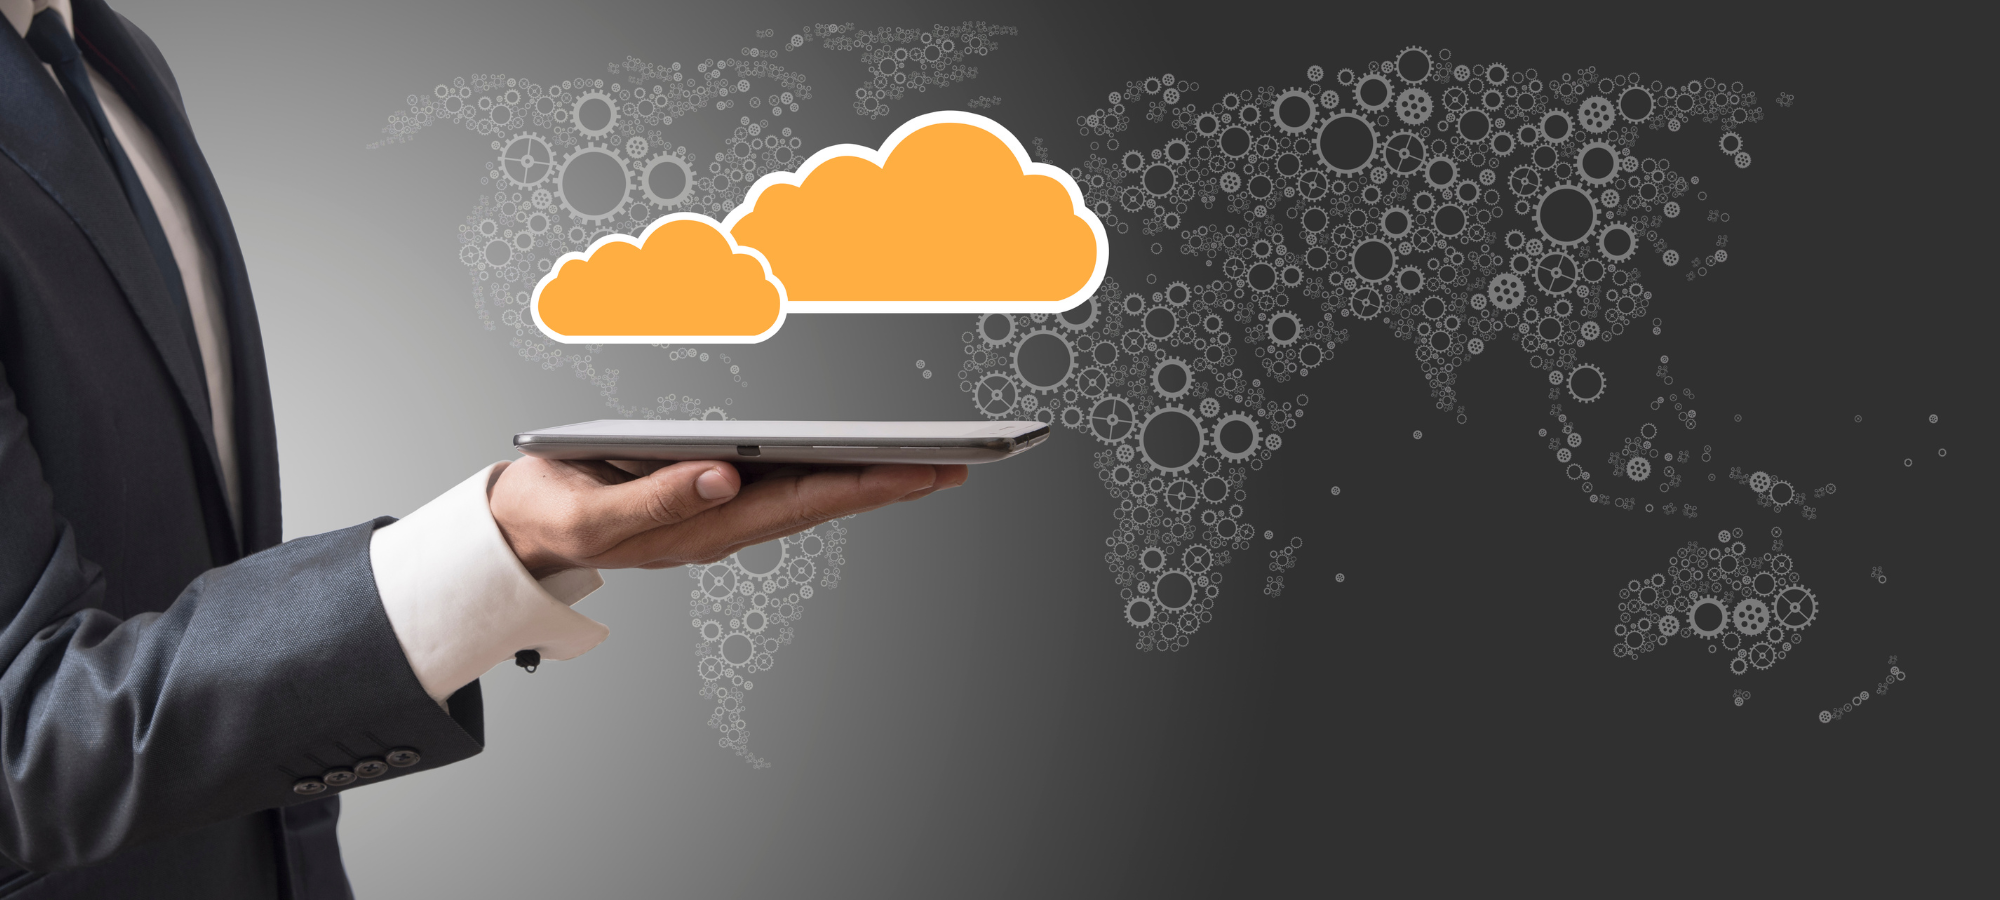 Studiu SAP: Eficiența operațională, motivul principal pentru care managerii români adoptă cloud